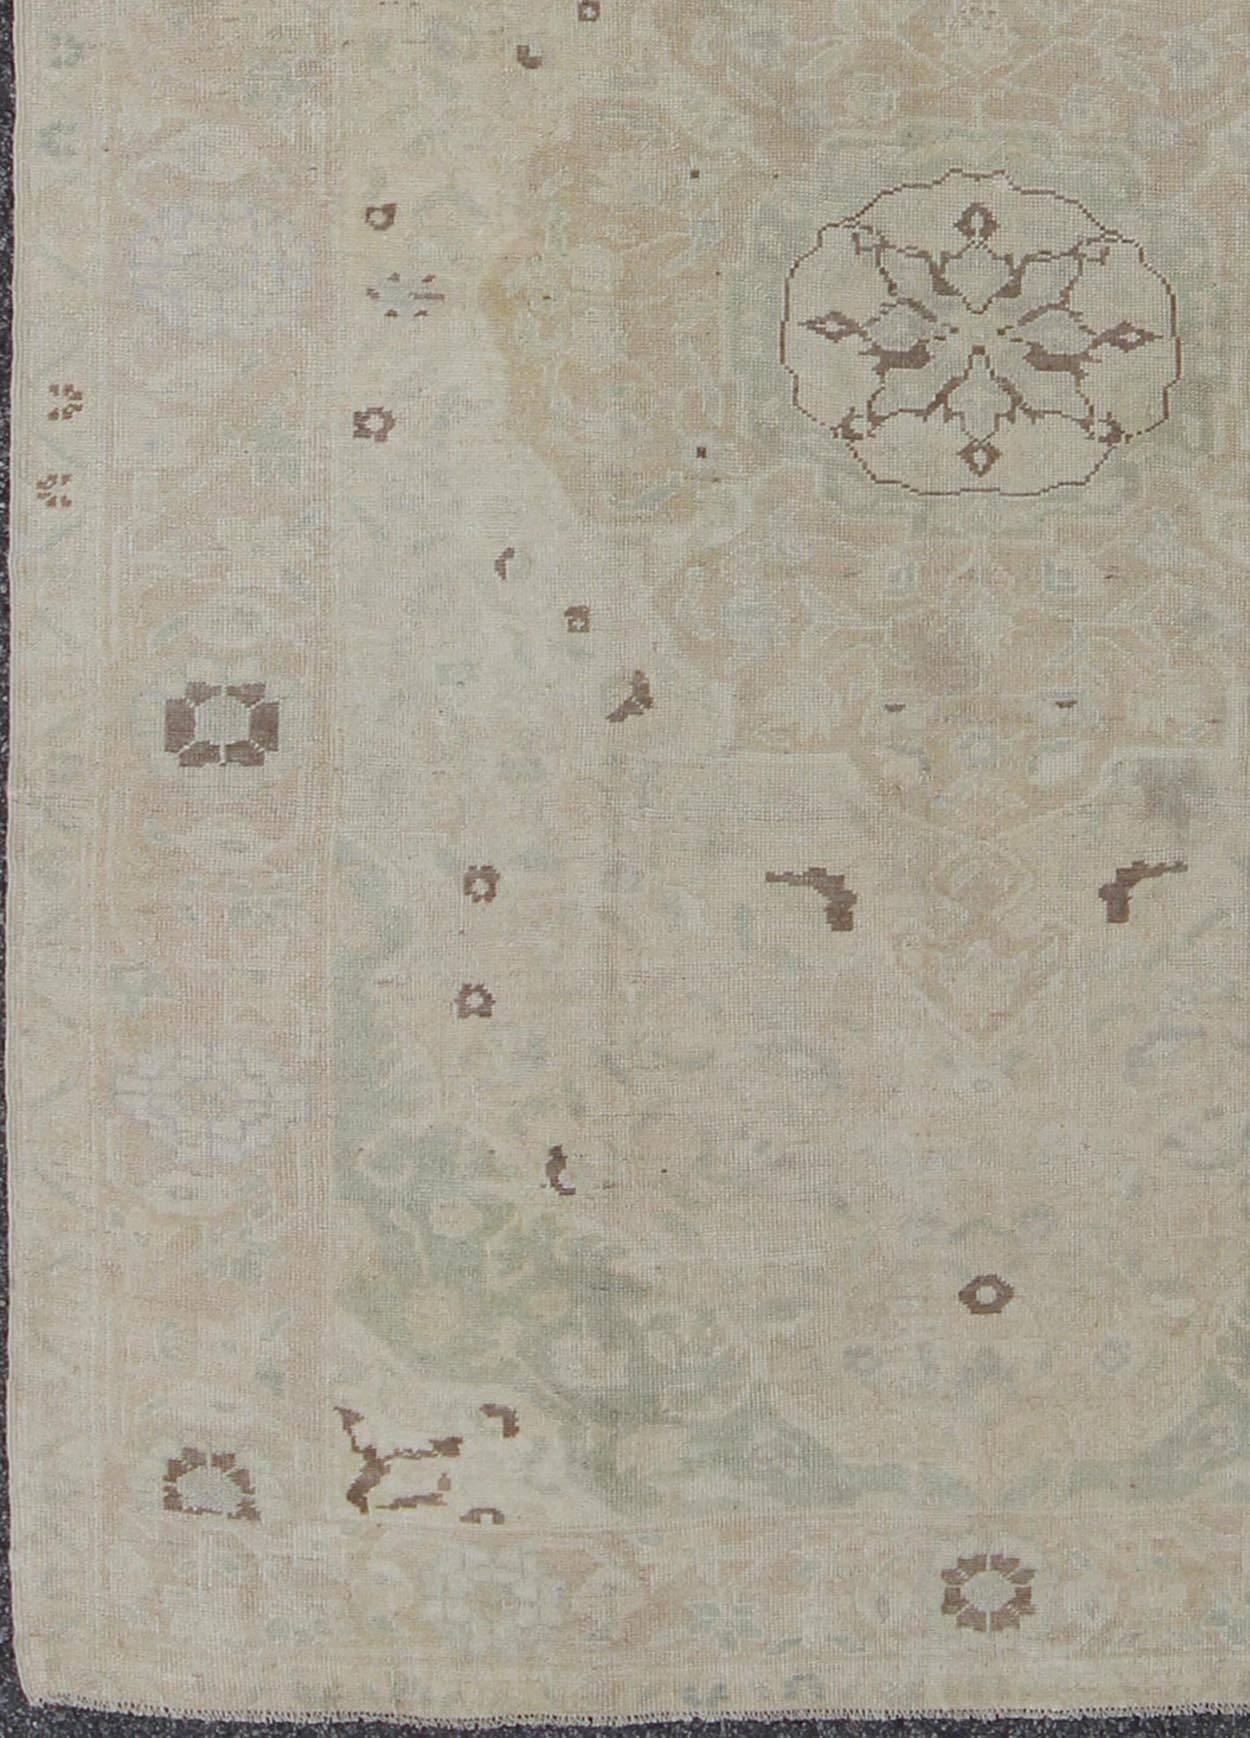 Gedämpfter türkischer Oushak-Teppich mit Medaillonmuster und floralem Muster.  teppich de-141693, herkunftsland / typ: Türkei / Oushak, um die Mitte des 20. Jahrhunderts

Dieser türkische Oushak-Teppich (ca. Mitte des 20. Jahrhunderts) zeigt ein